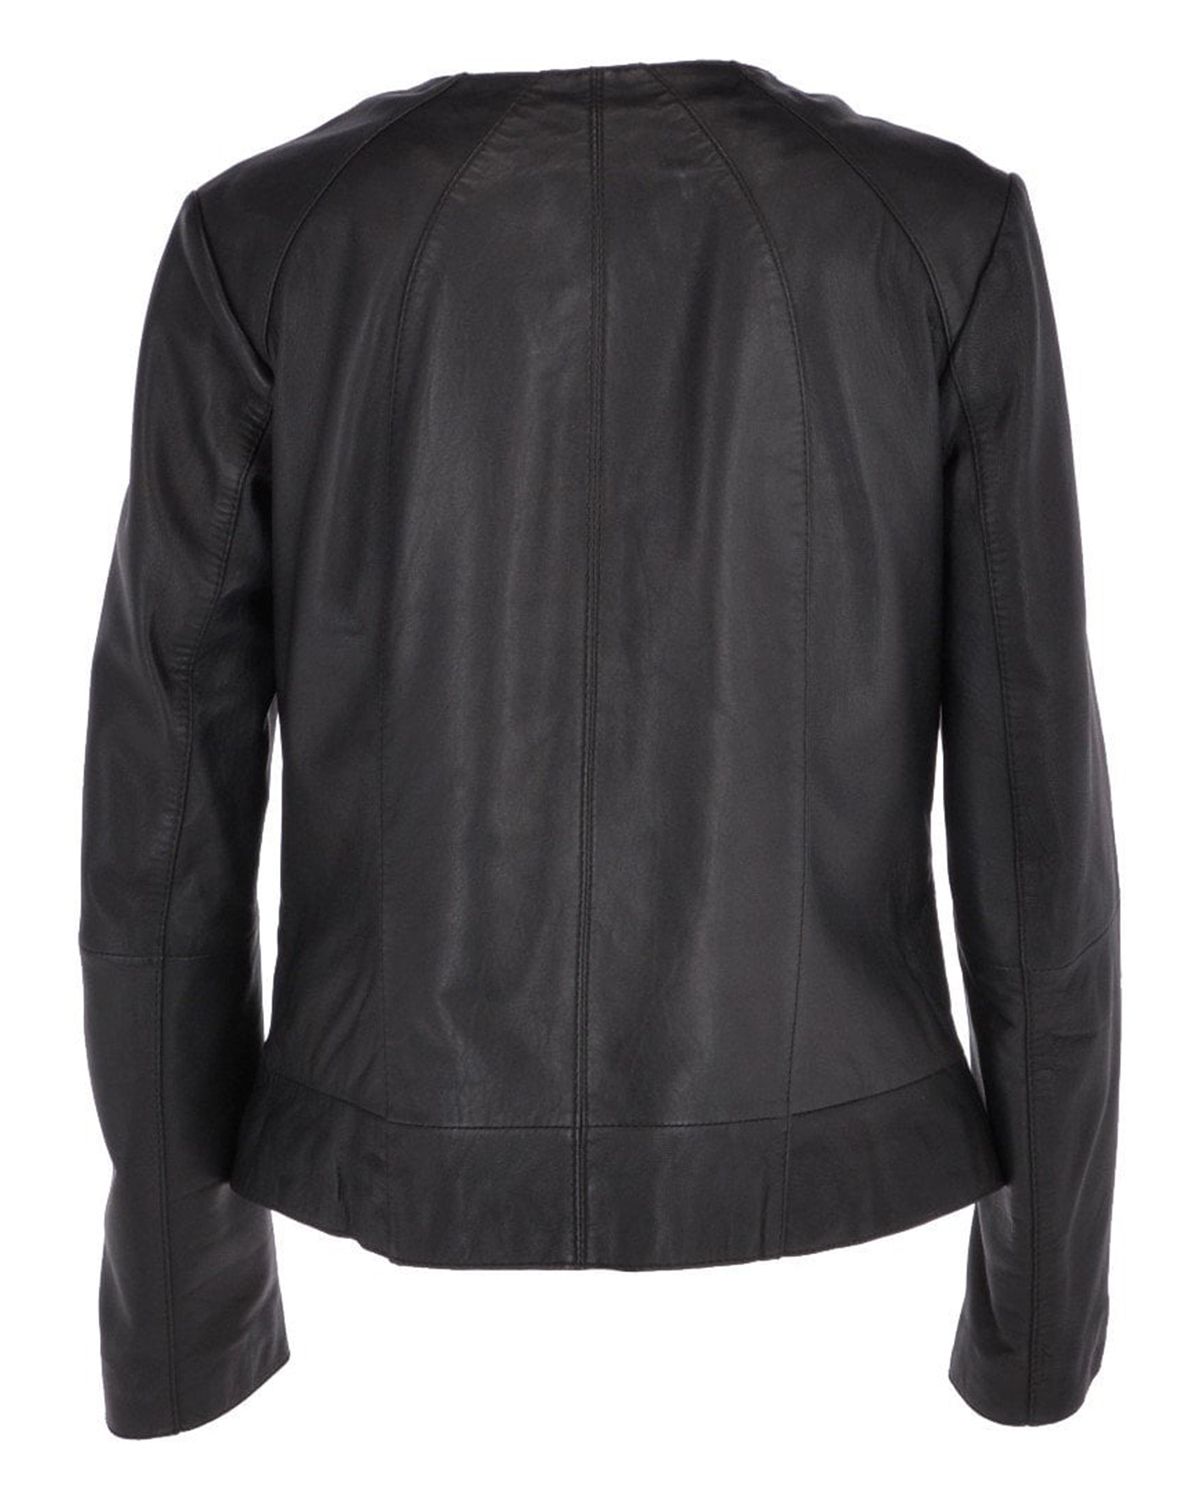 Womens Stylish Collarless Sheepskin Leather Jacket | Elite Jacket